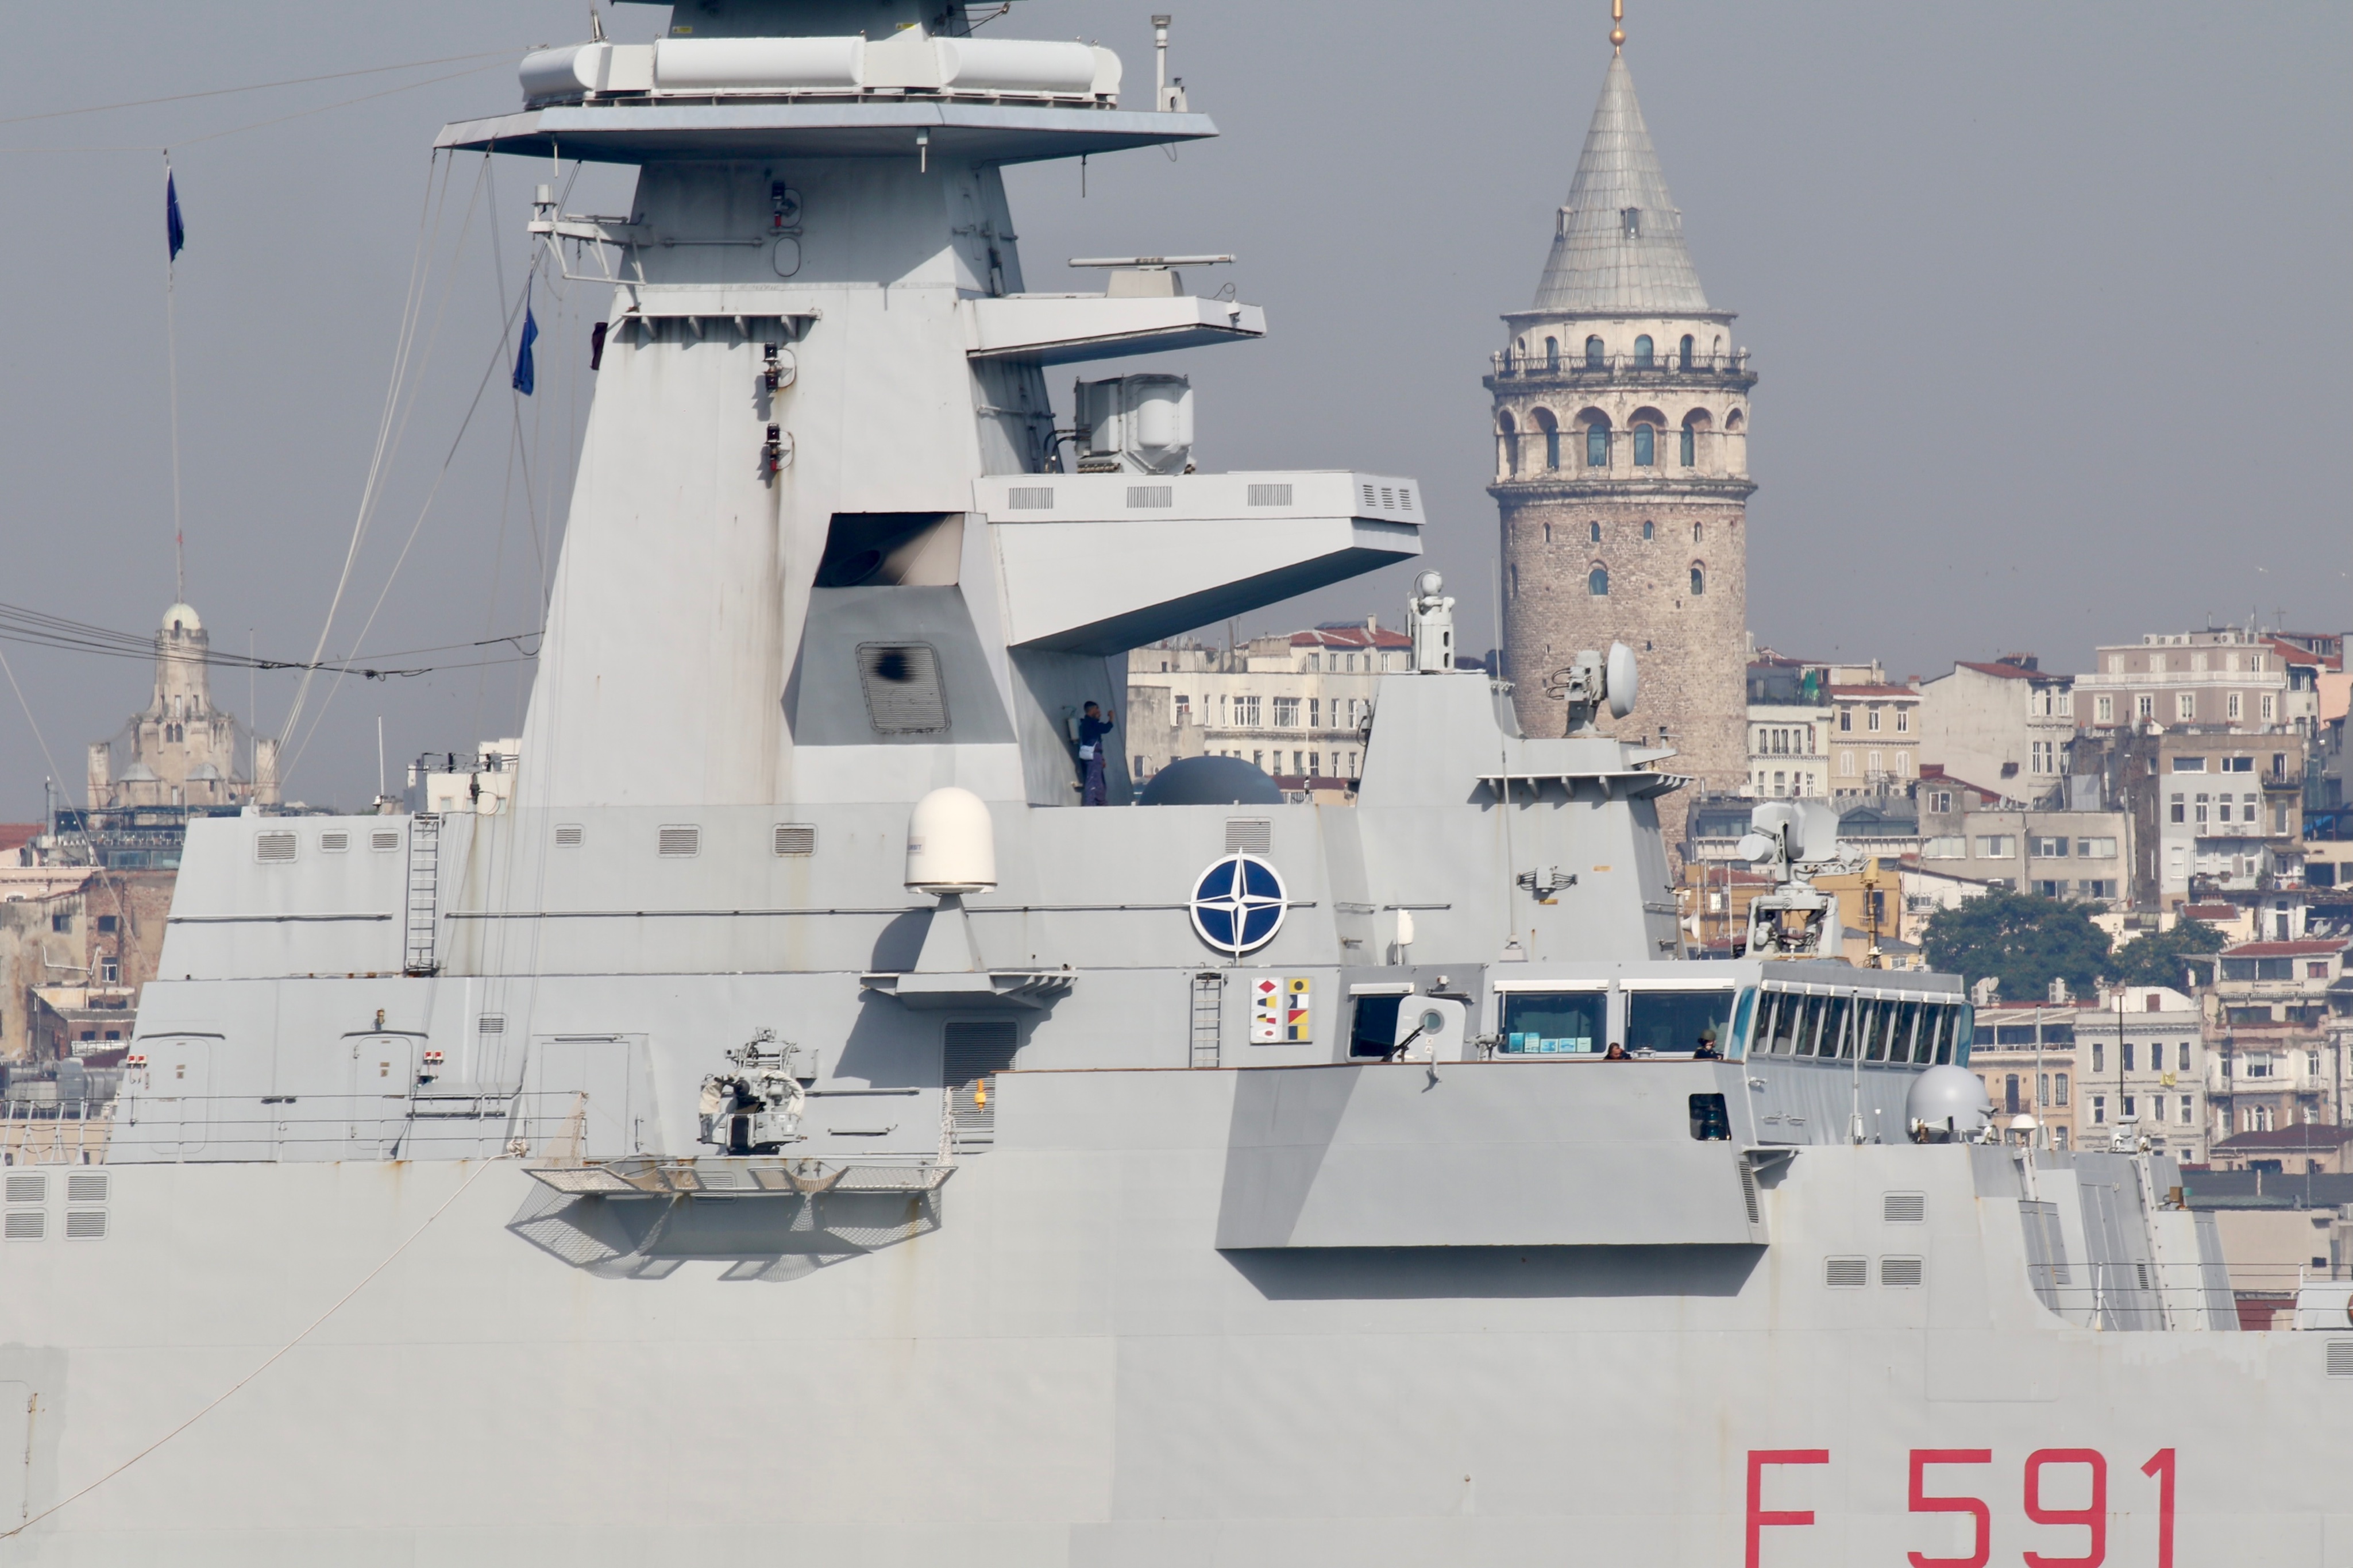 Два флагманських фрегати Туреччини та Італії зайшли в Чорне море – фото